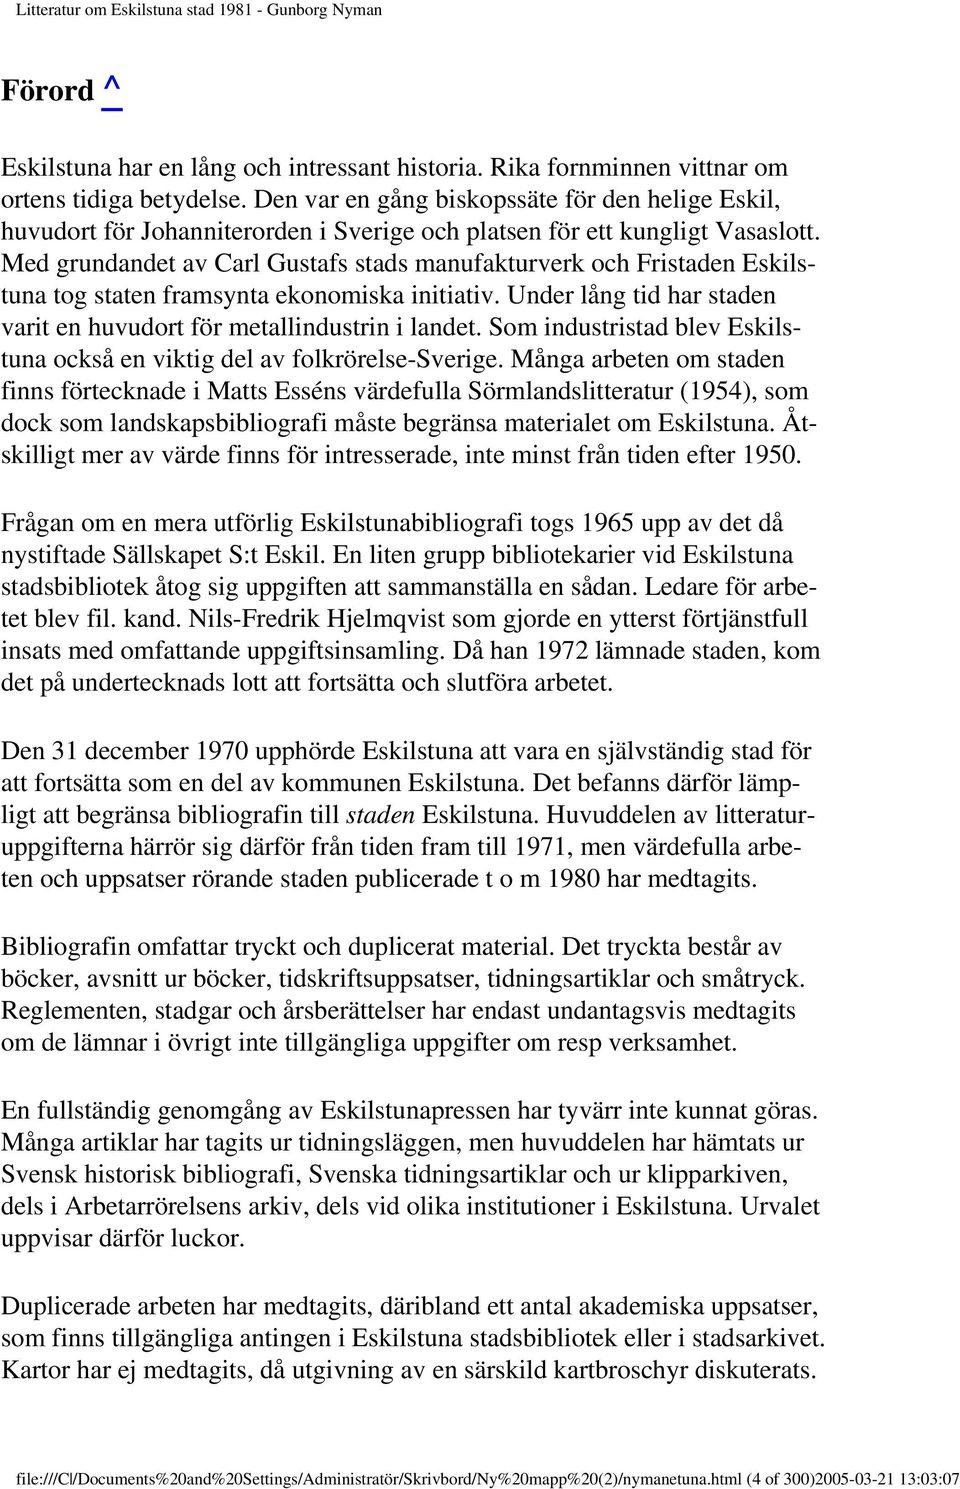 Litteratur om Eskilstuna stad Gunborg Nyman - PDF Gratis nedladdning